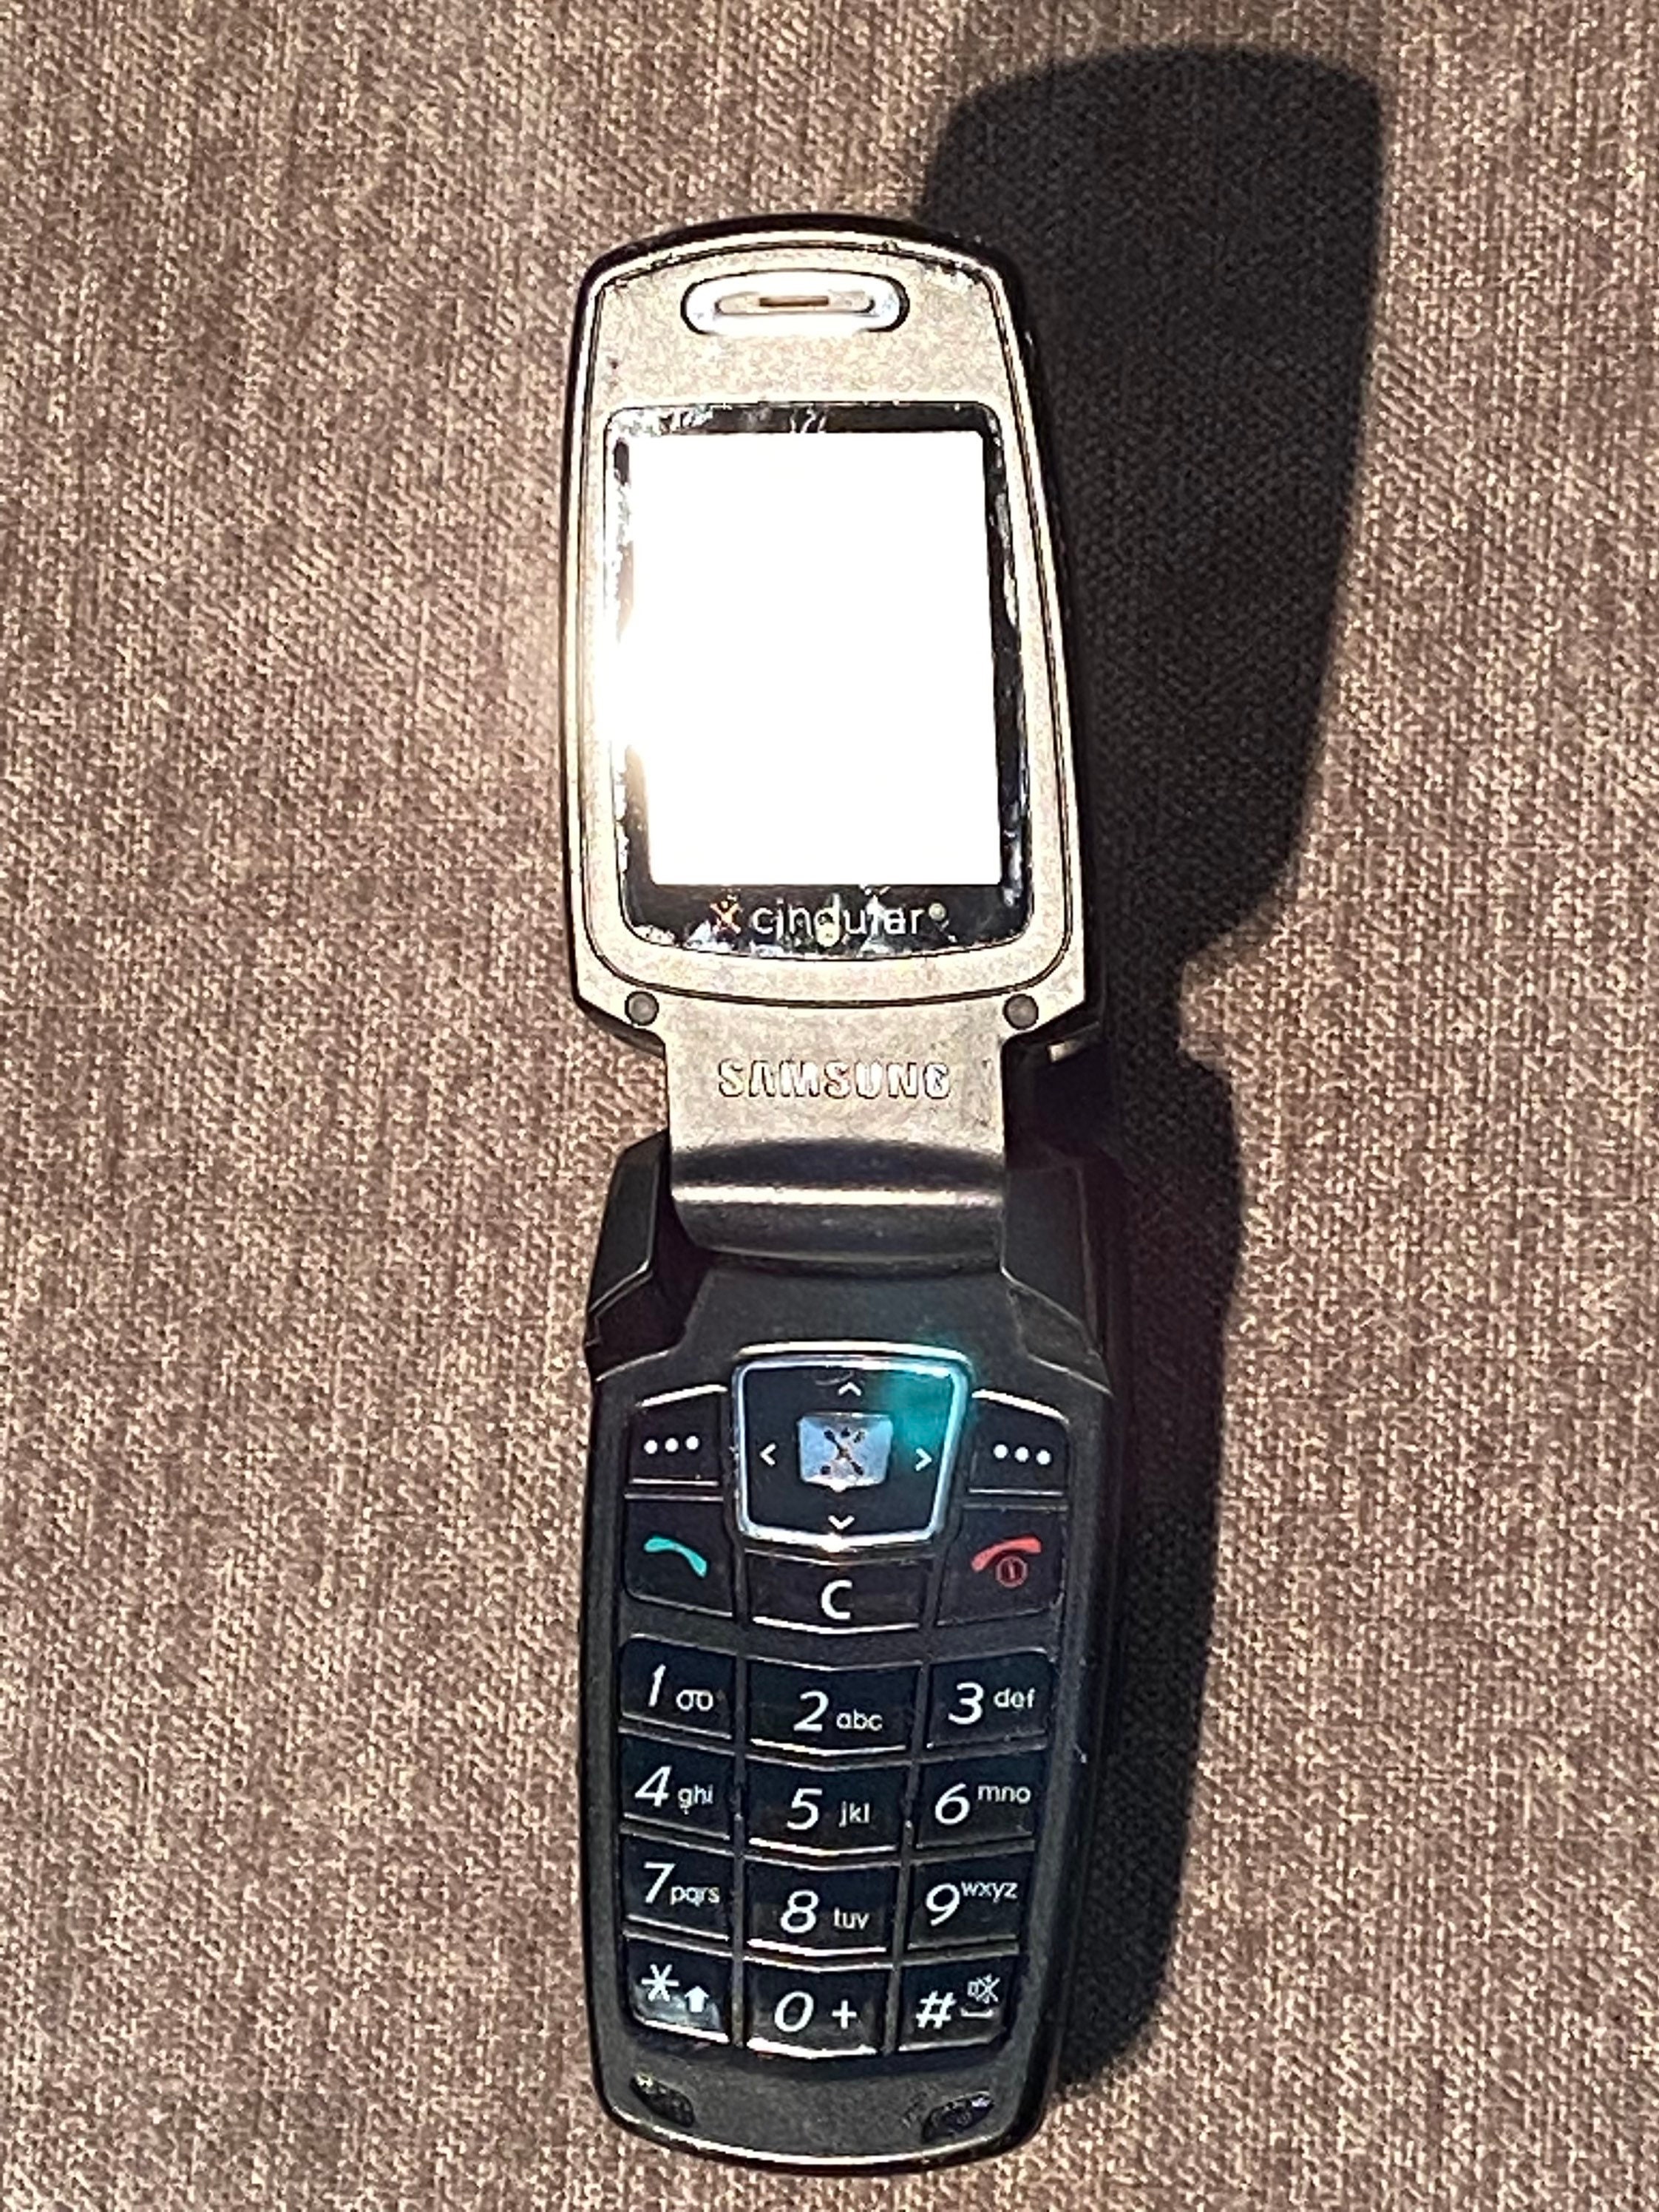 Samsung Flip Phone Old Models, Samsung Flip Mobile